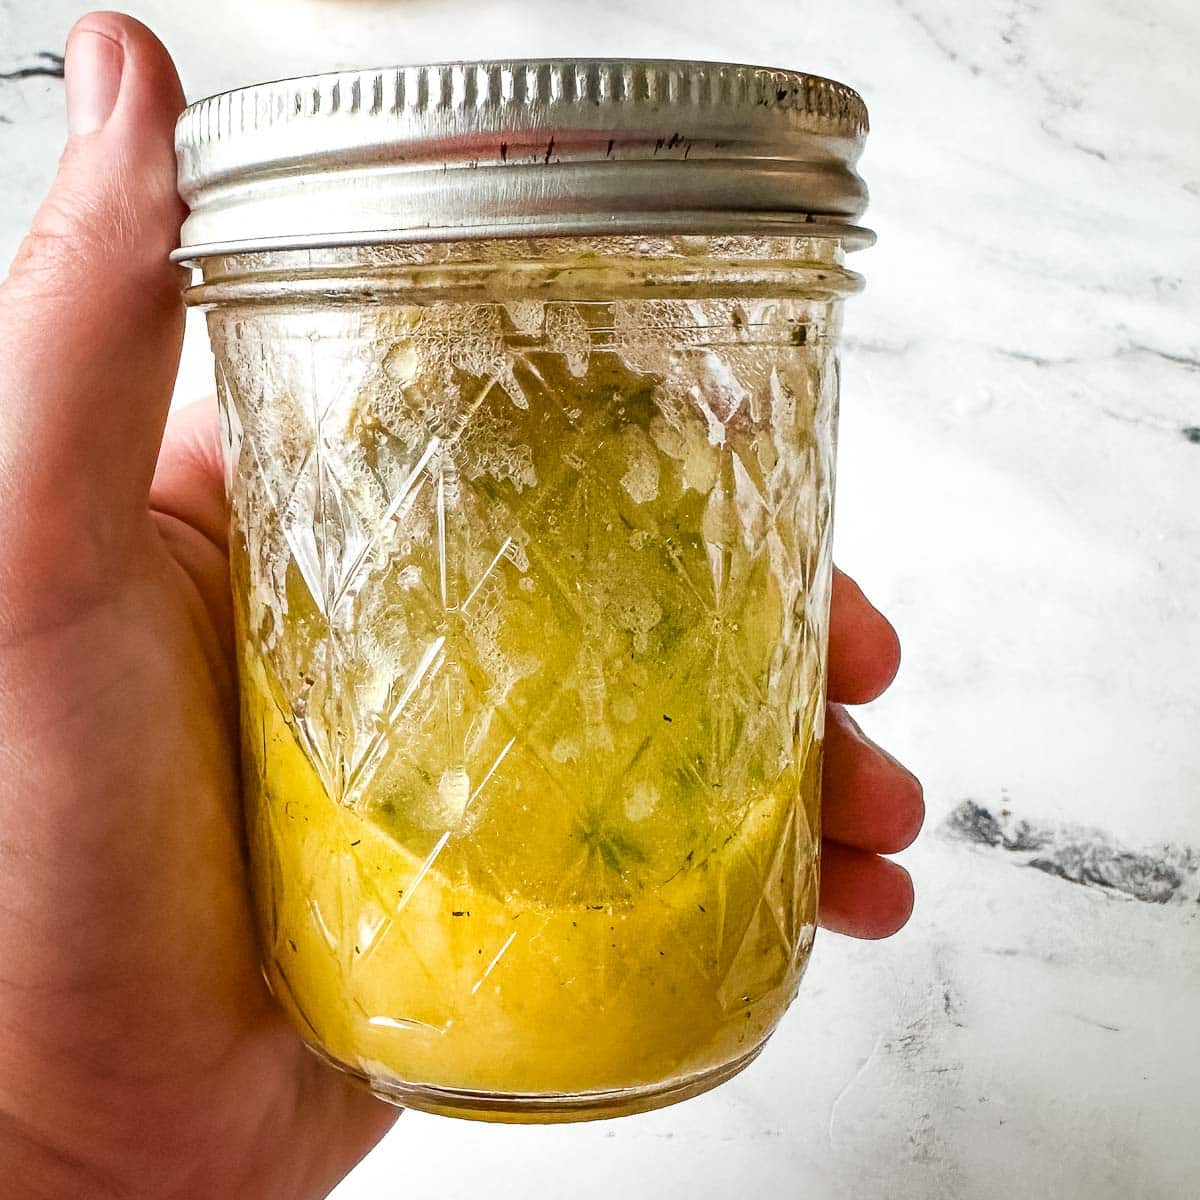 Lemon vinaigrette in a glass jar.